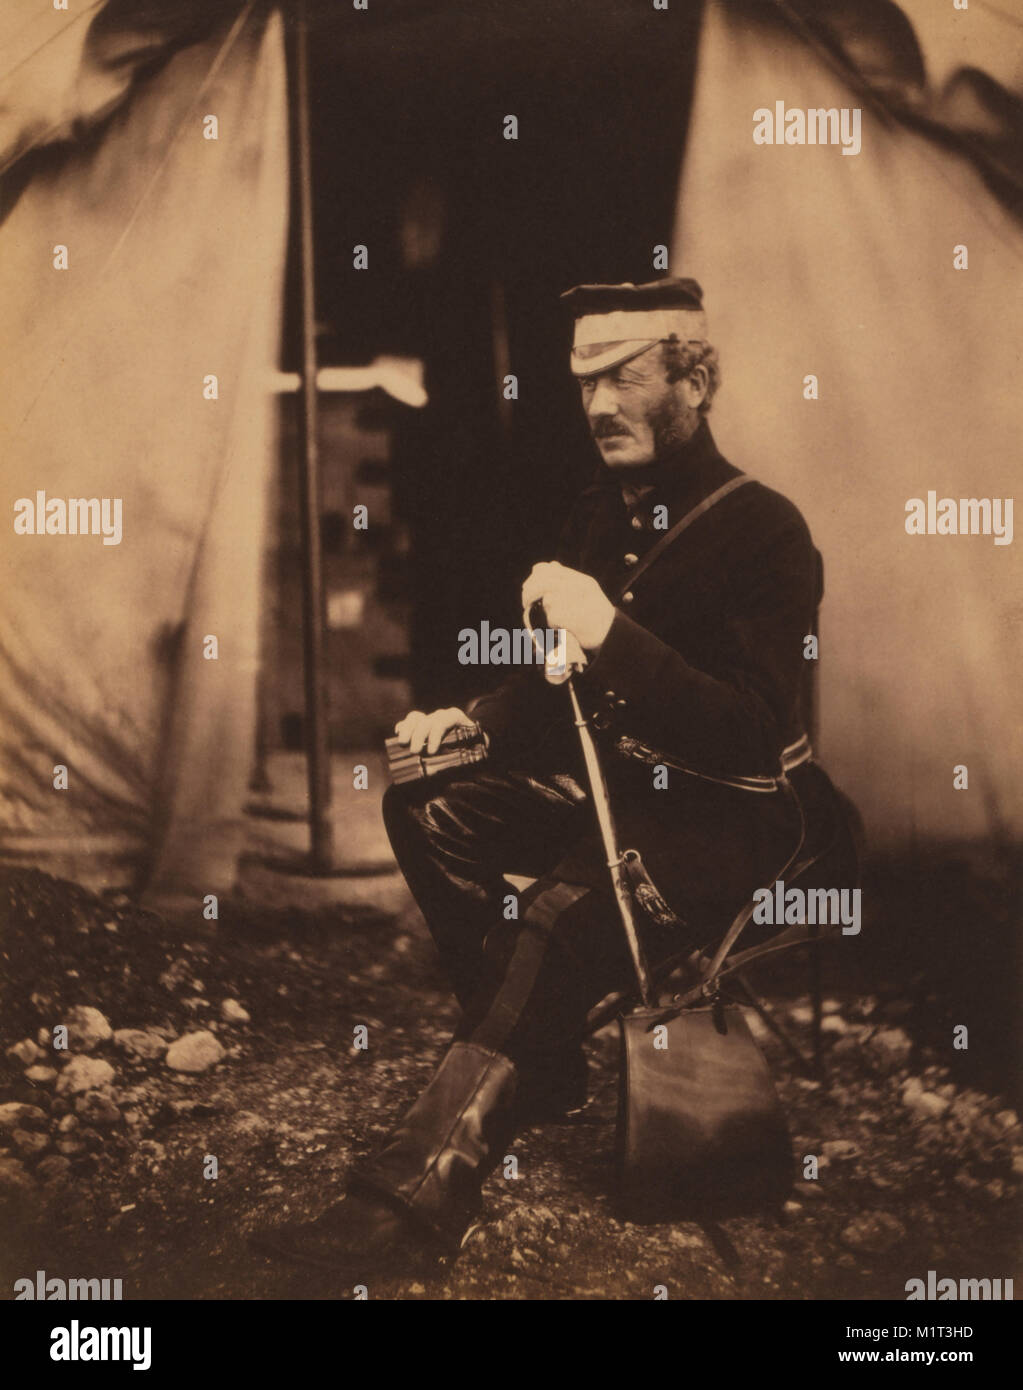 Colonnello britannico Richard Wilbraham, seduto ritratto in uniforme con la spada e binocoli, Guerra di Crimea, Crimea, Ucraina, da Roger Fenton, 1855 Foto Stock